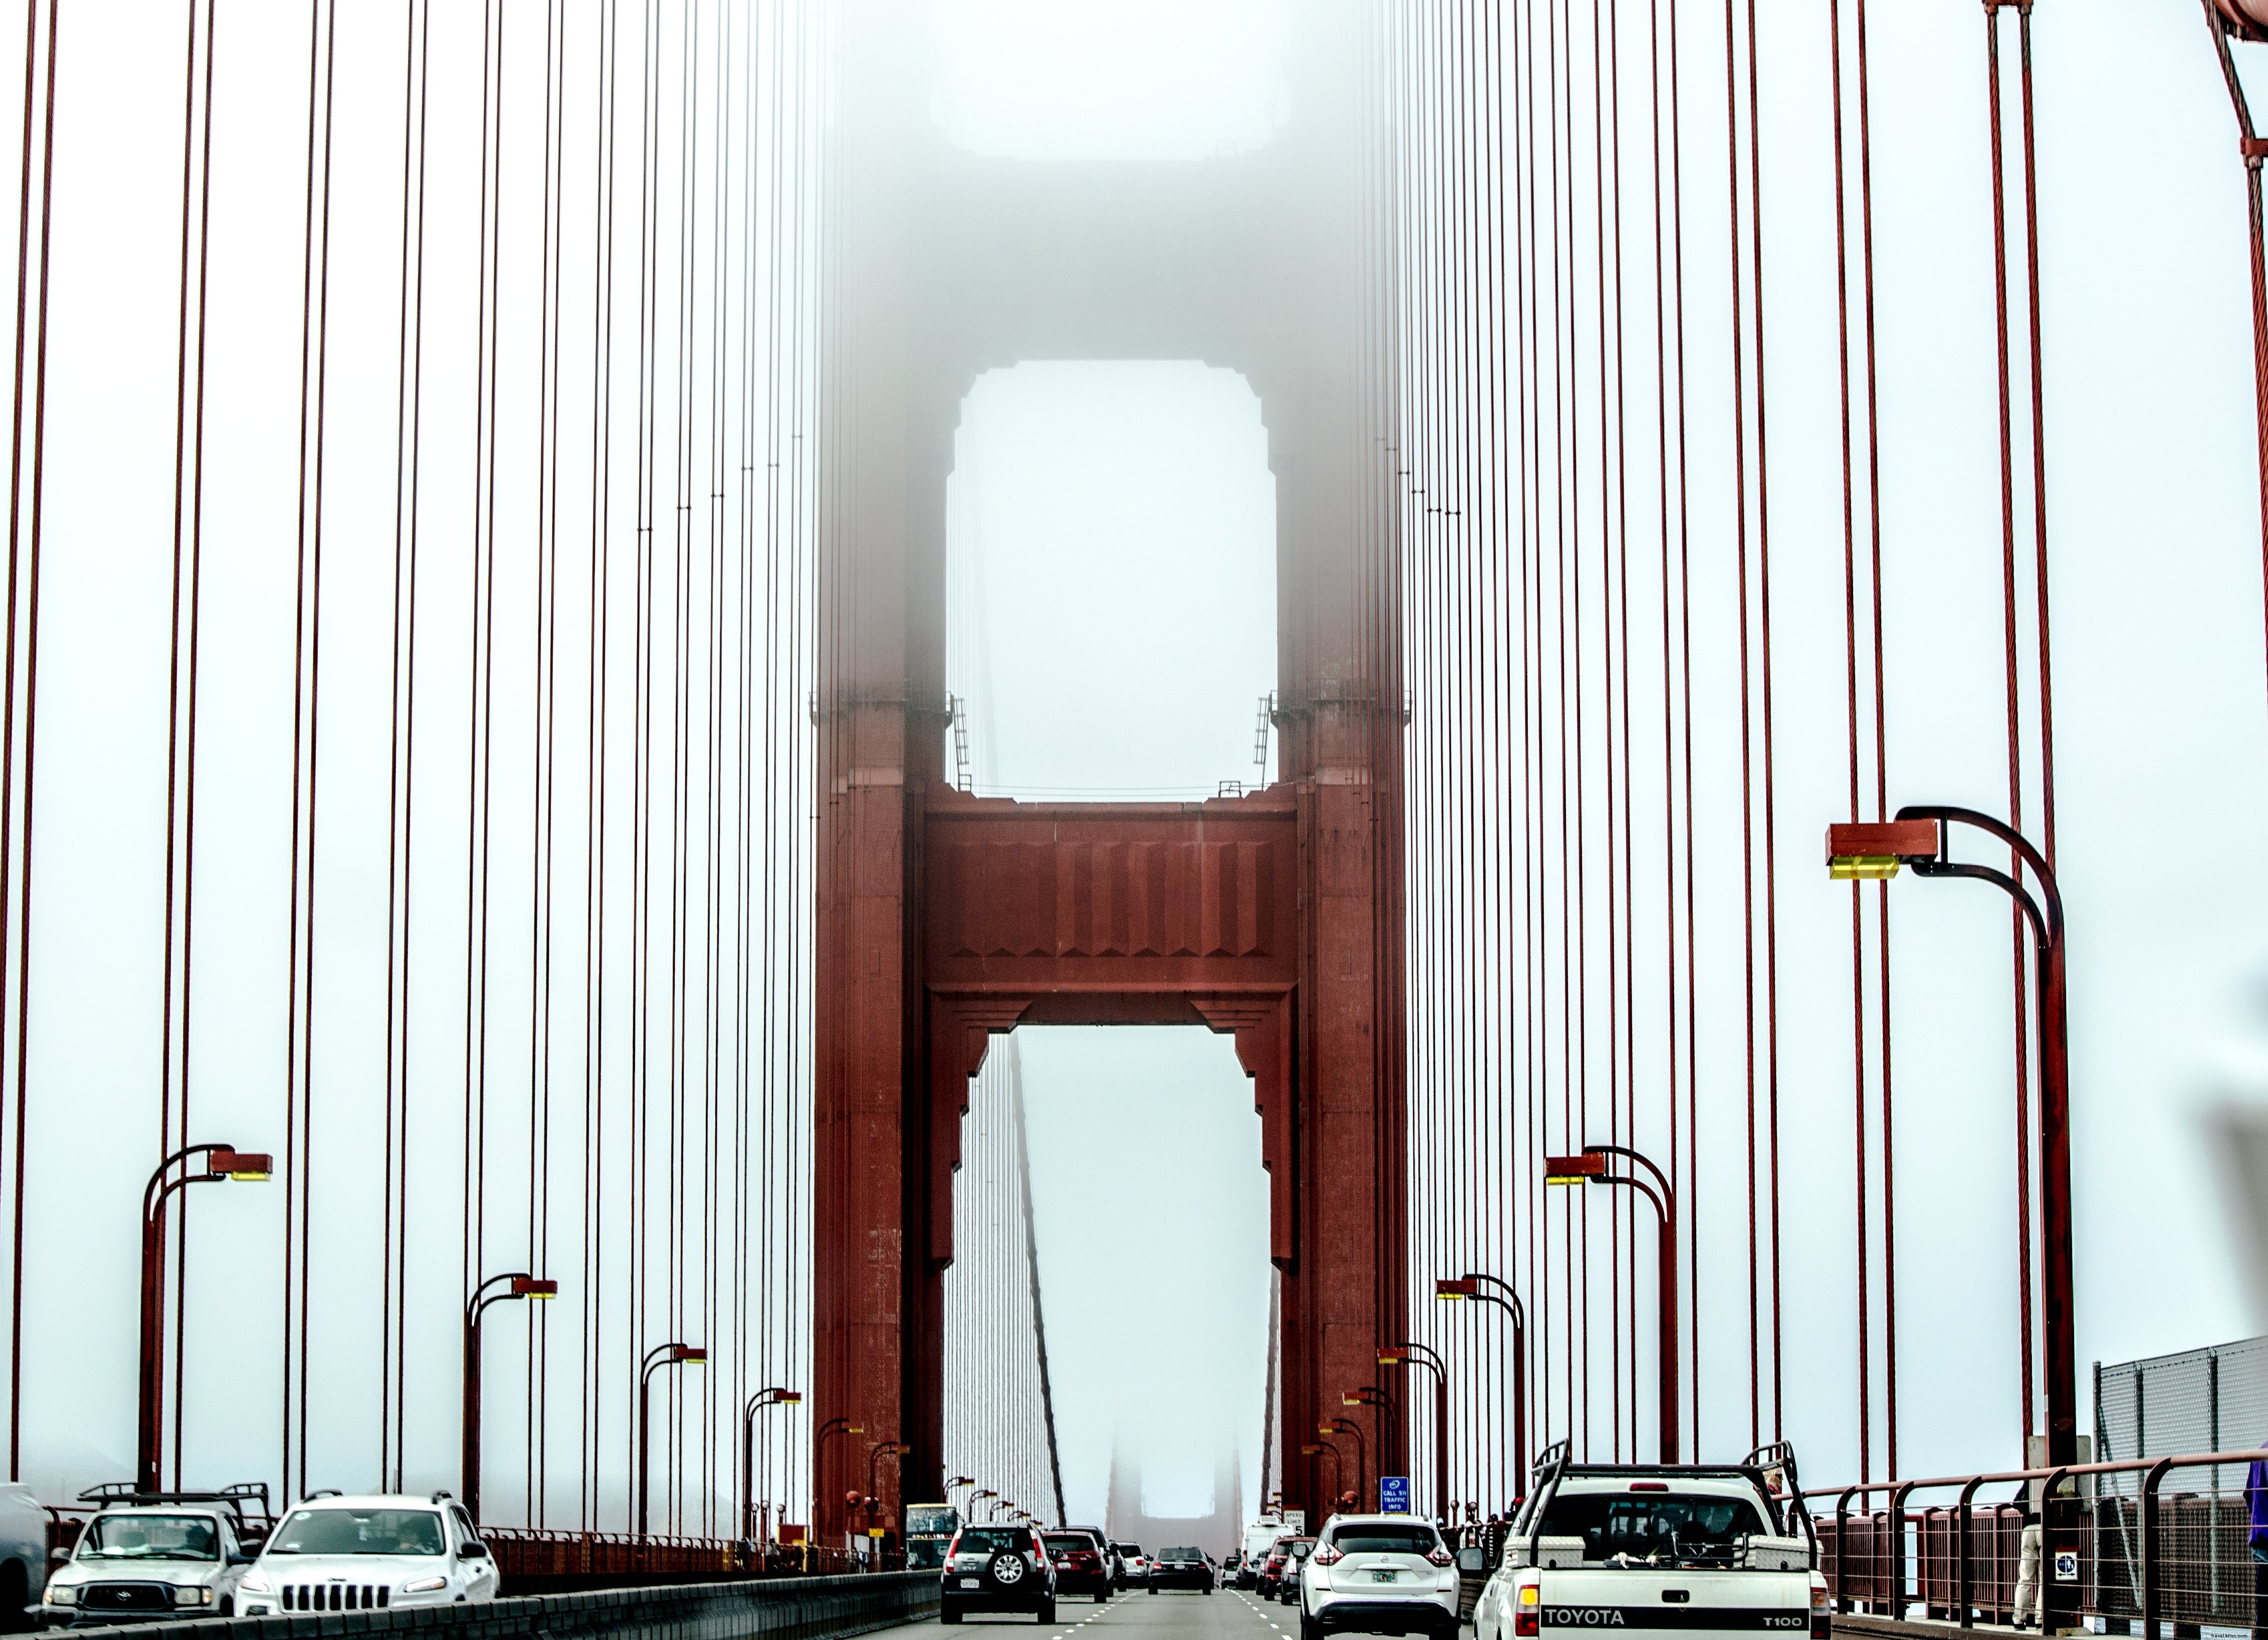 Tráfico en un puente colgante suspendido en la foto de la niebla